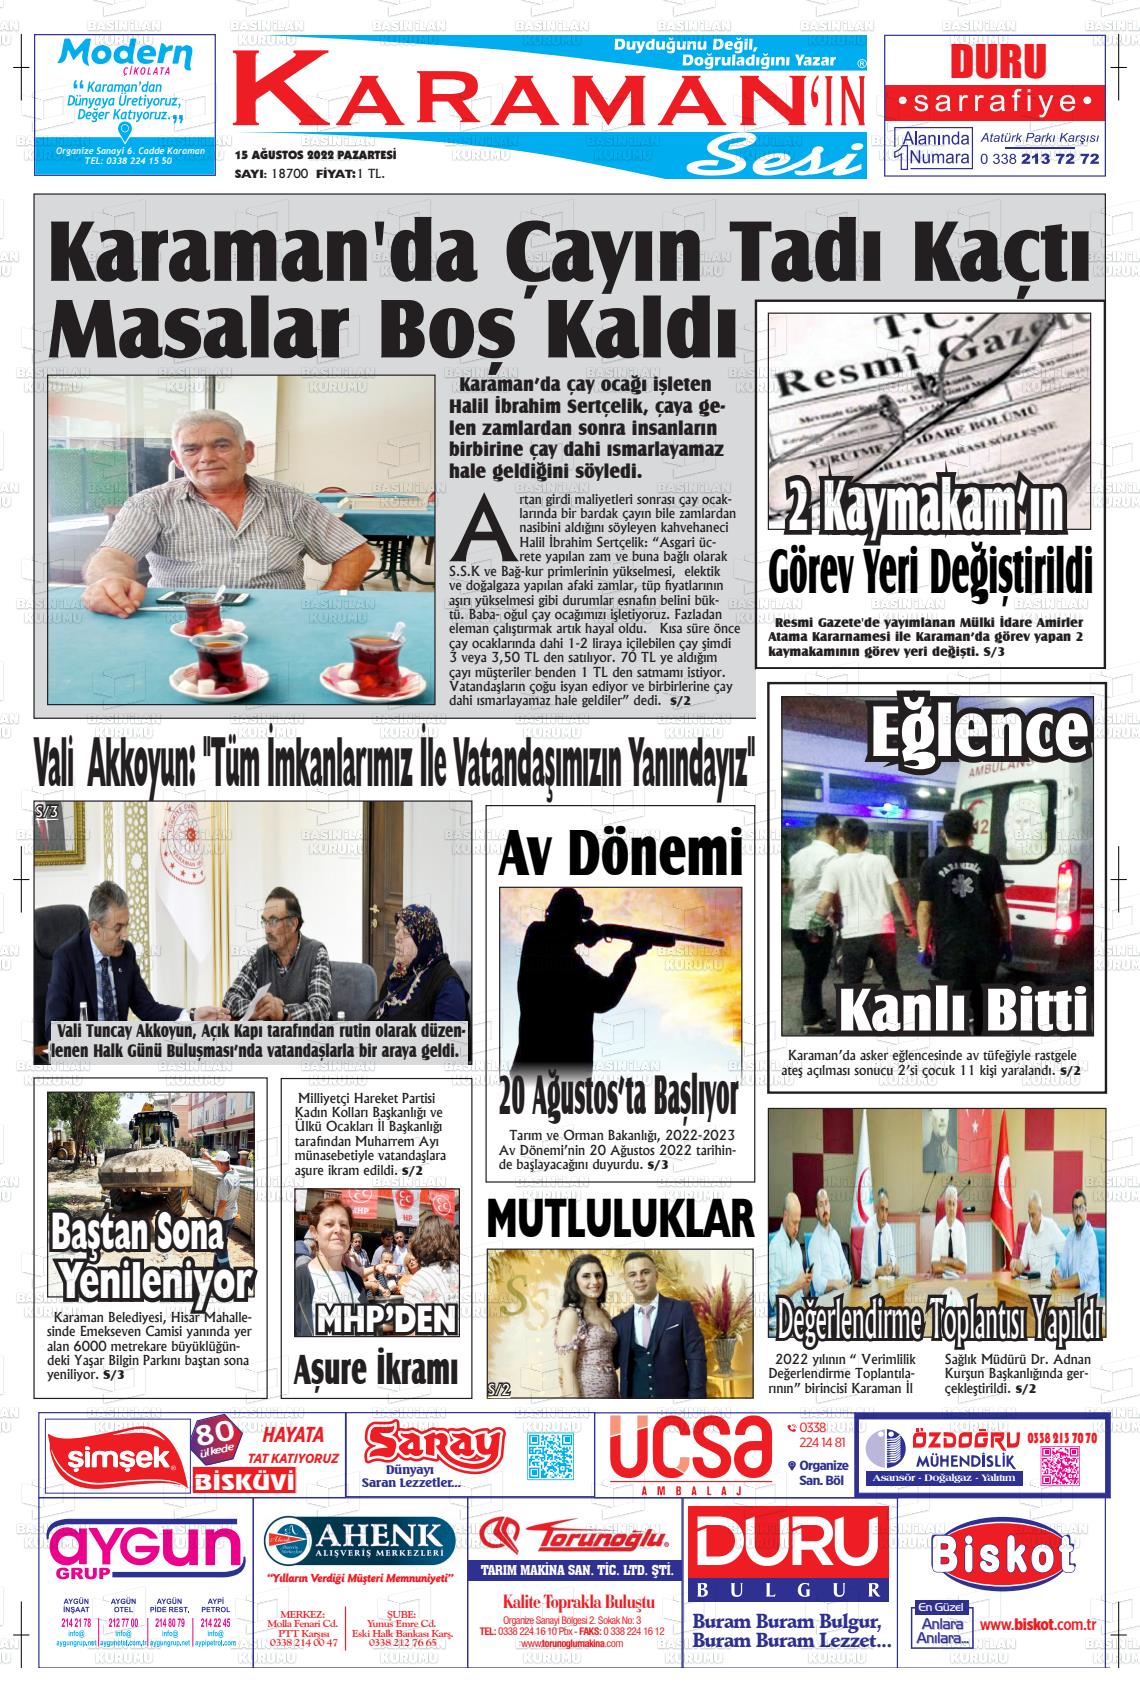 15 Ağustos 2022 Karaman'ın Sesi Gazete Manşeti